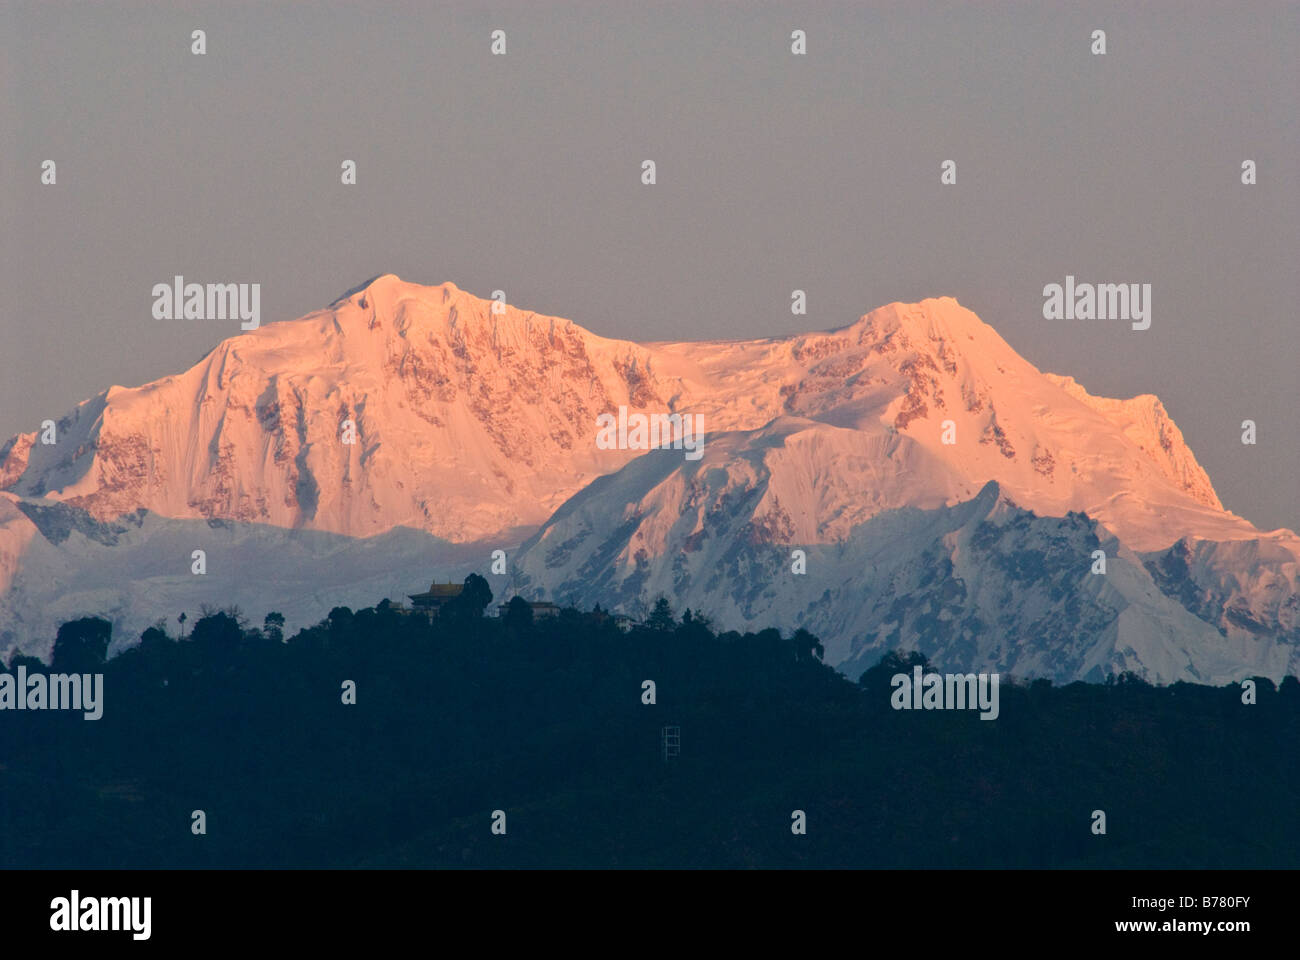 Los picos de la cordillera Kangchenjunga, Sikkim, al amanecer. Monasterio Pemayangtse puede verse en la cima de una colina, en el primer plano. Foto de stock